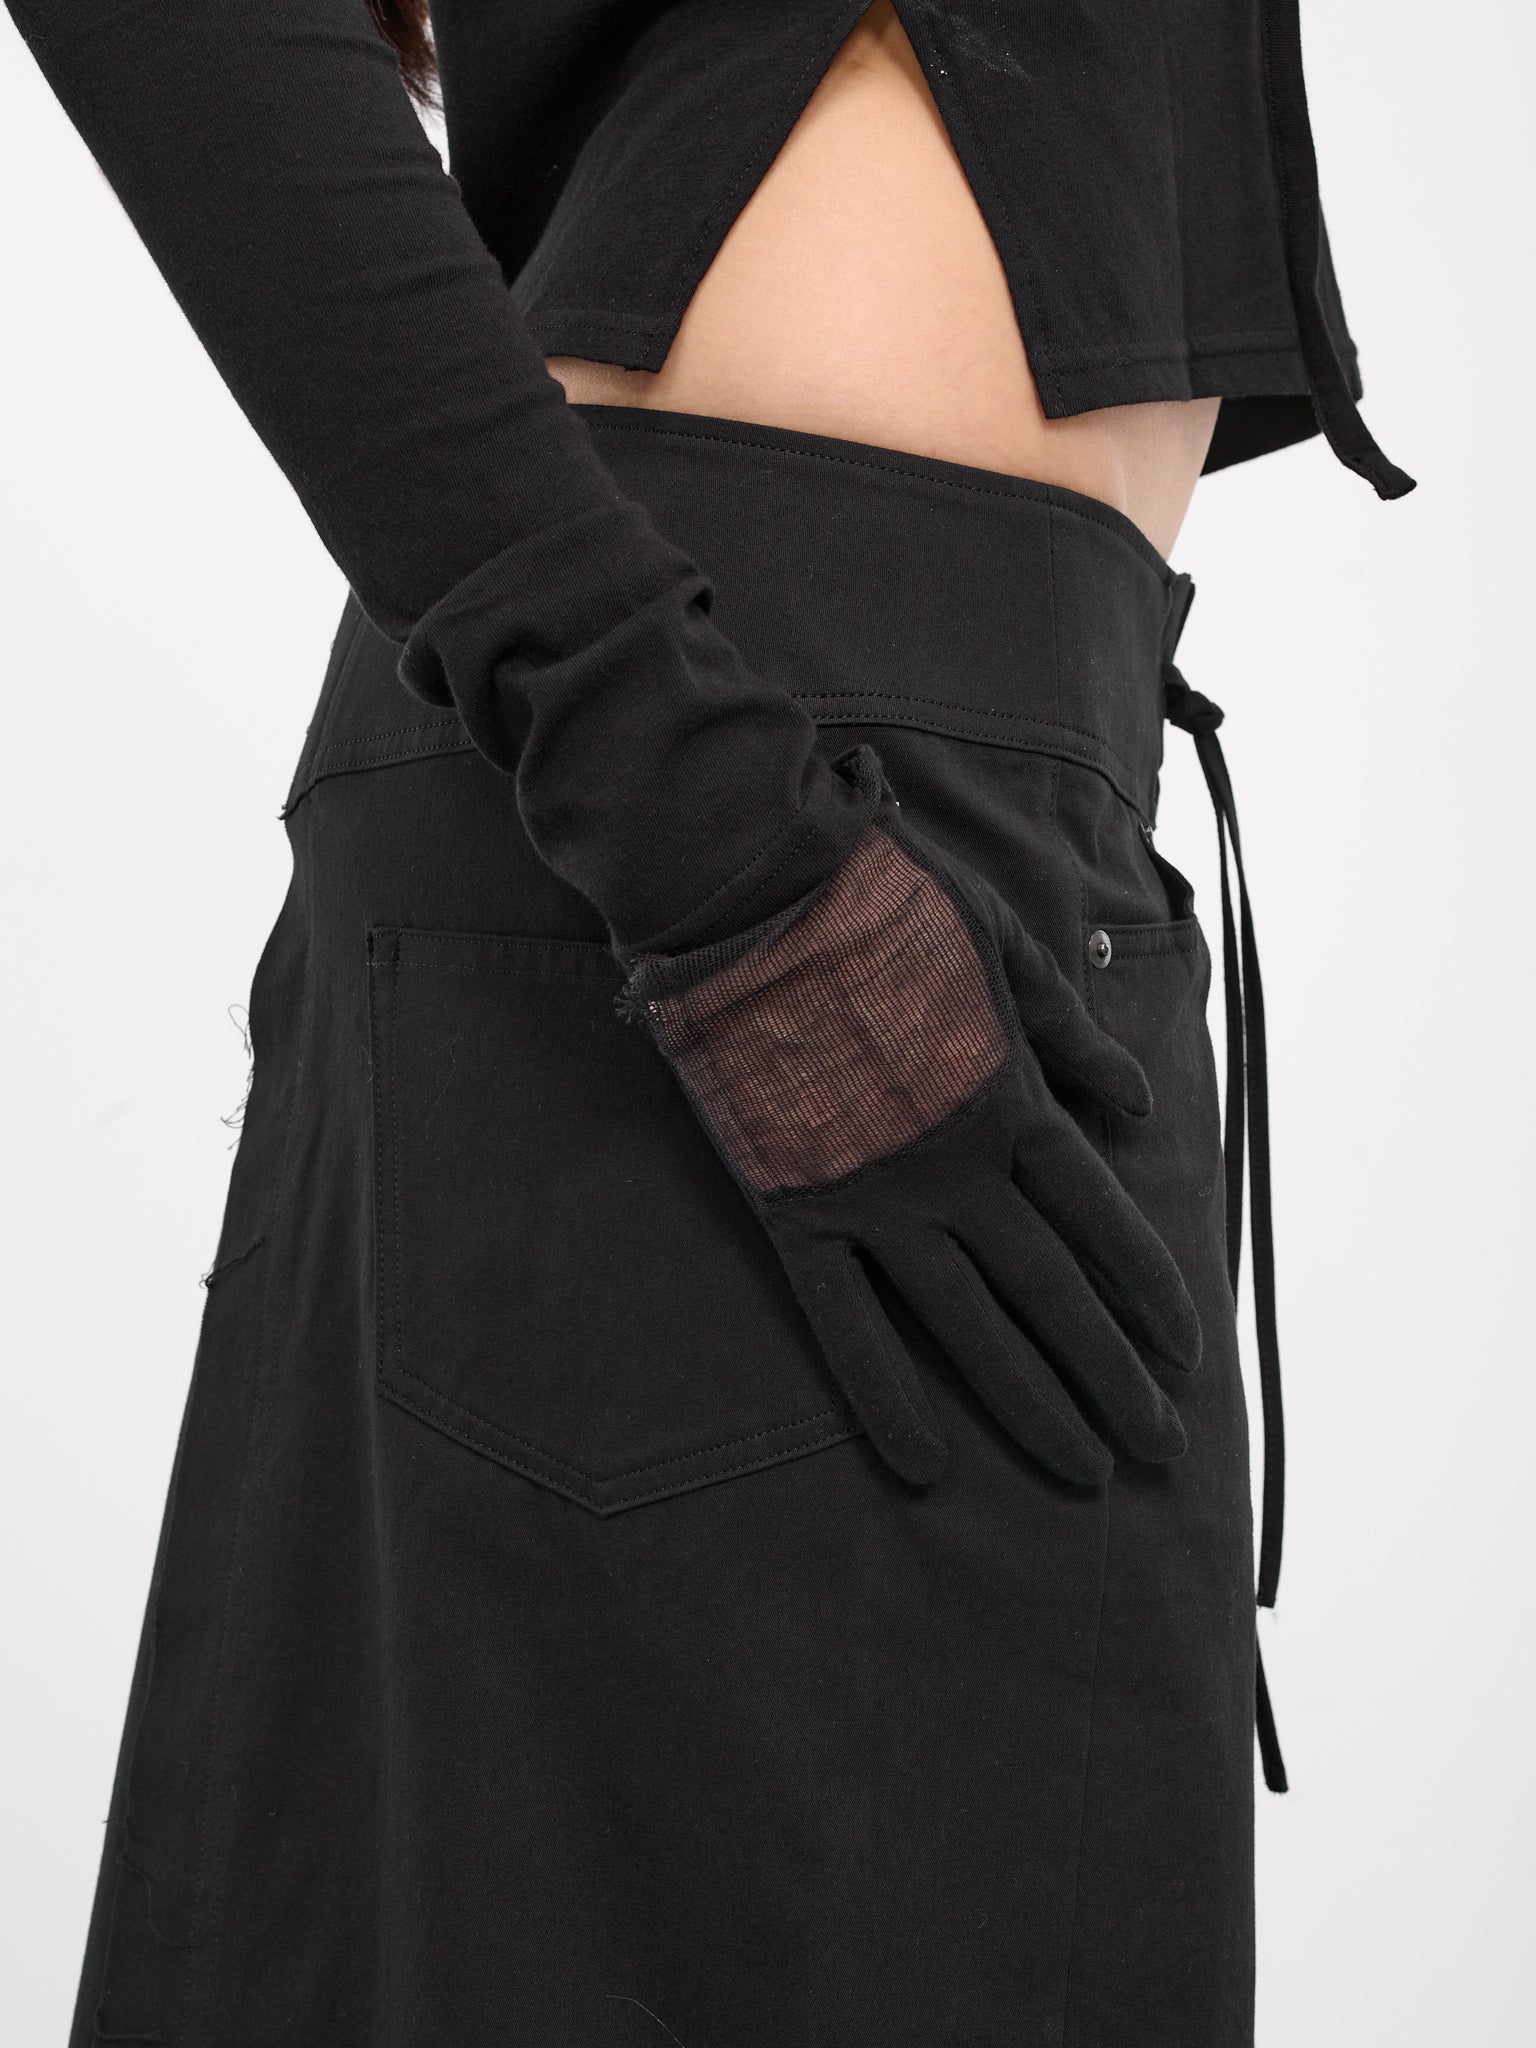 Sheer Panel Gloves (FS-W10-868-2-BLACK)